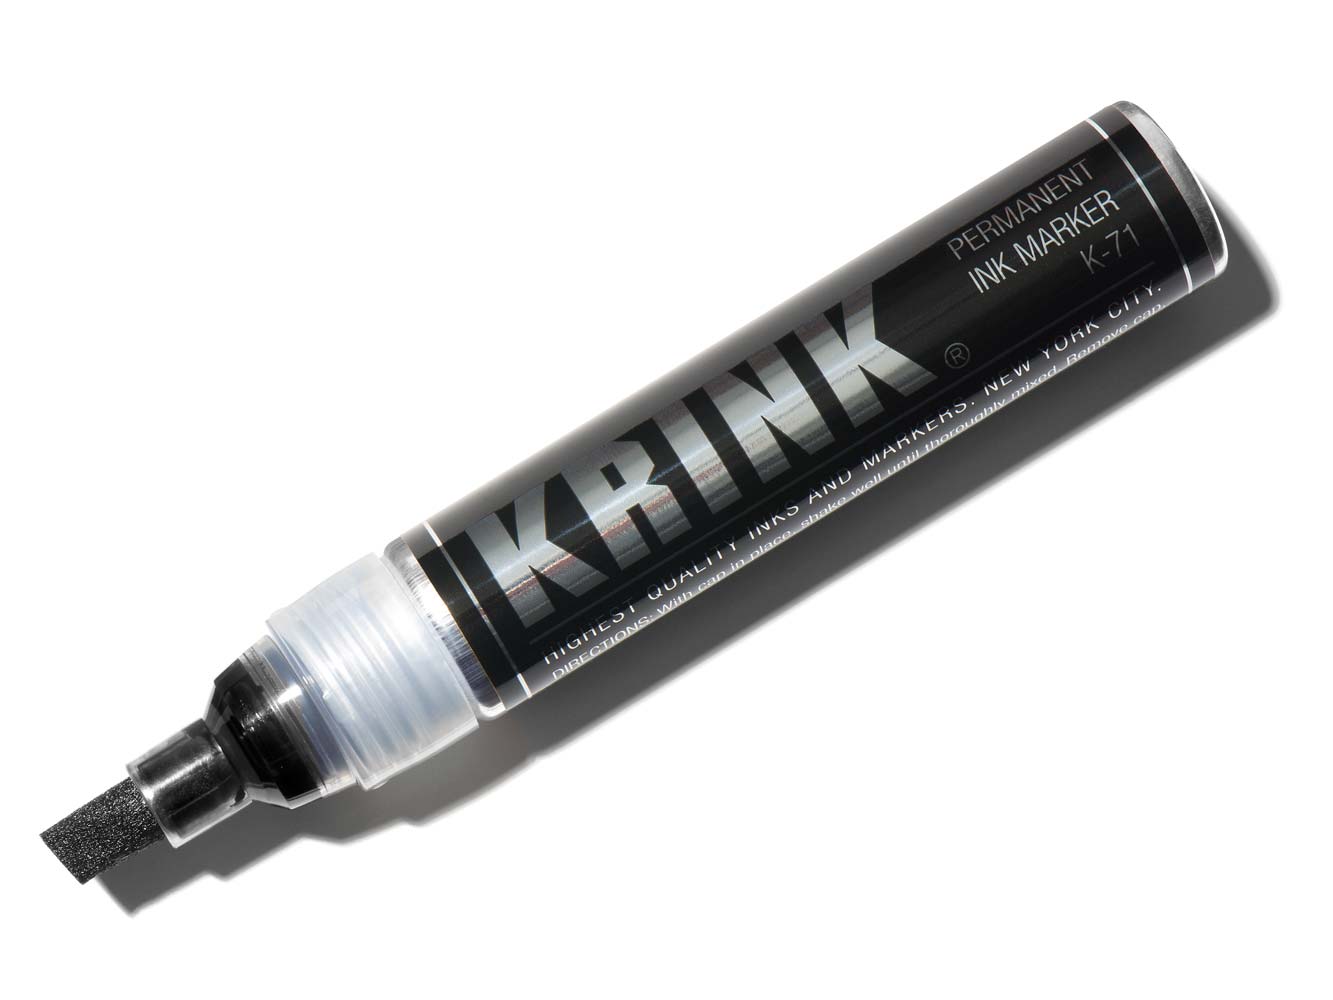 BUY Krink K-71 Permanent Ink Marker Black